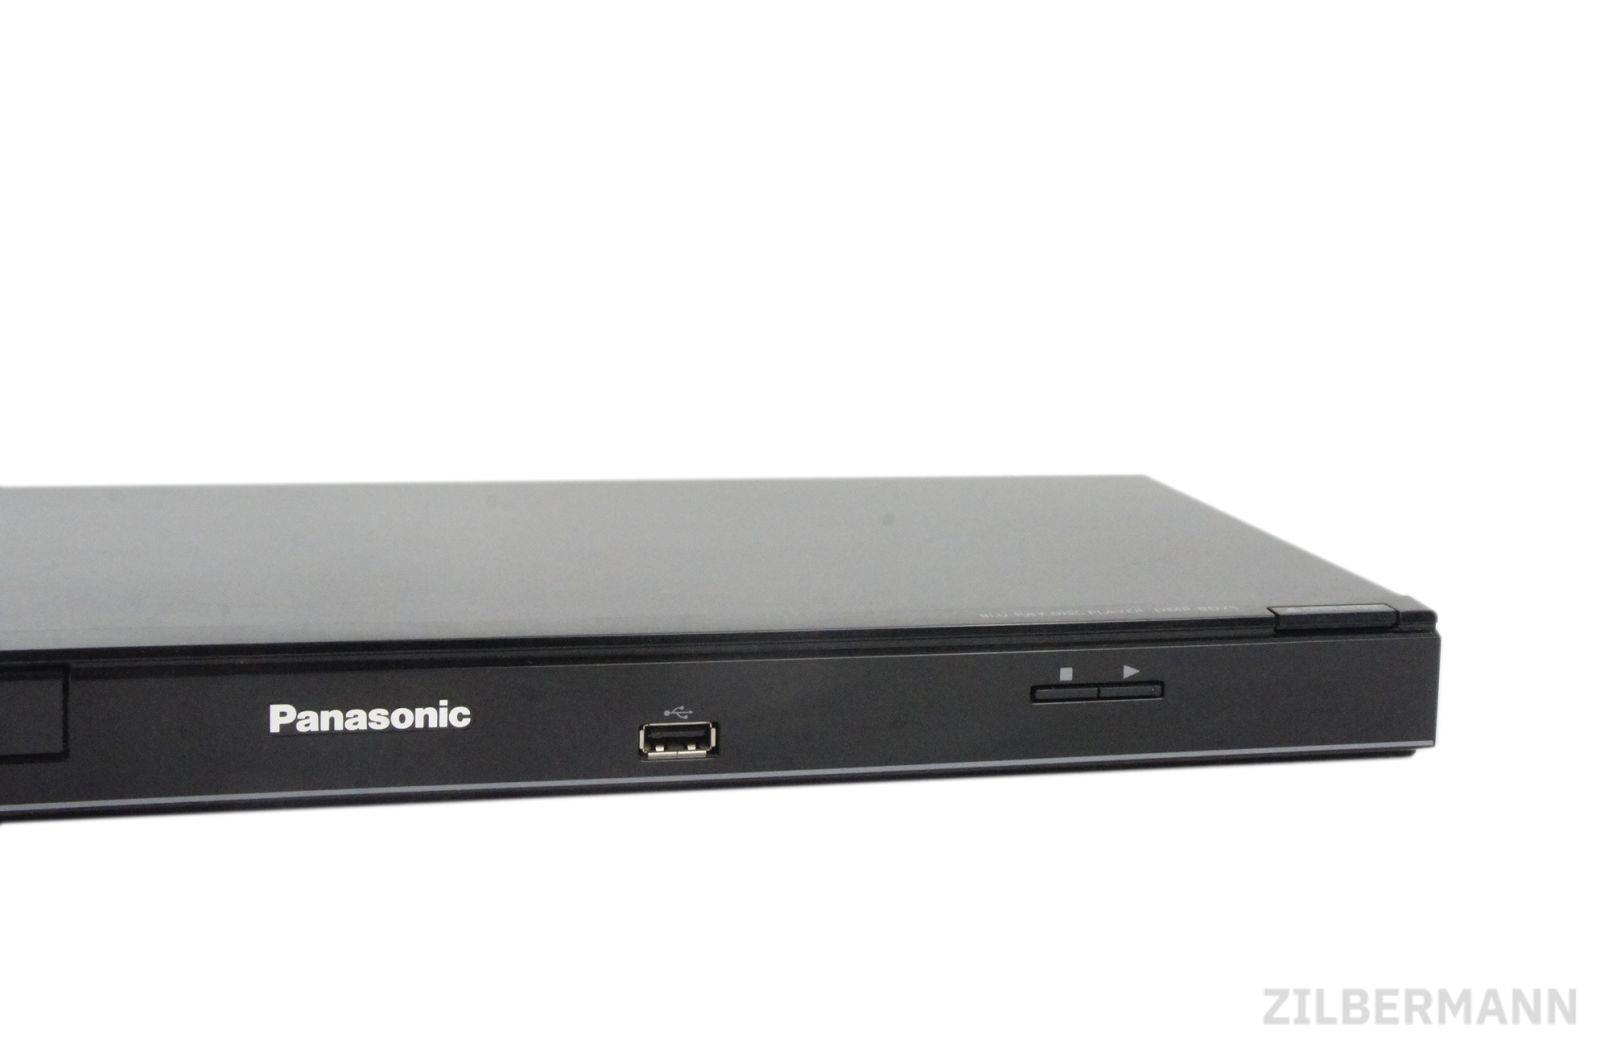 Panasonic_DMP-BD75EG-S_Blu-ray-Player_HDMI_Upscaler_1080p_USB_10